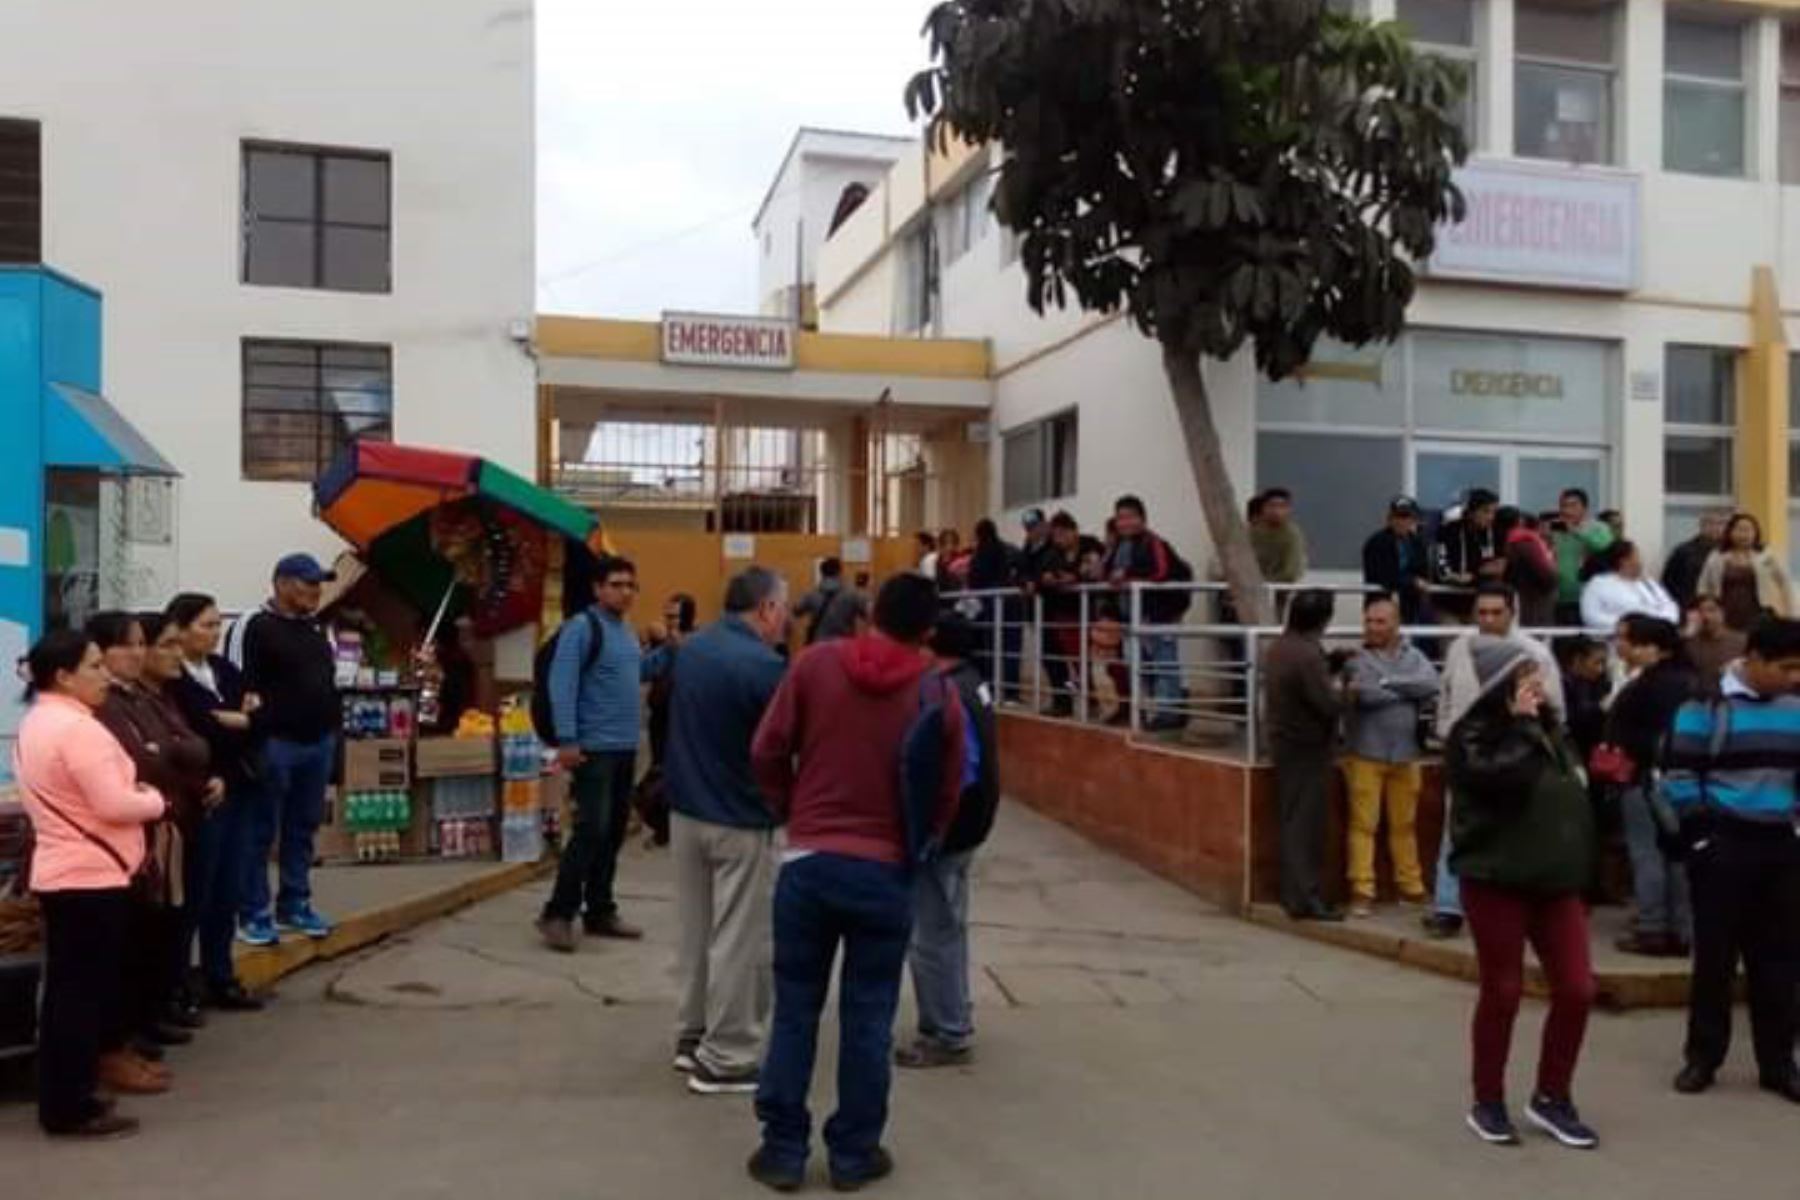 Más de 340 escolares de Cañete presentaron problemas de intoxicación y fueron trasladados a hospital Rezola. Foto: Katia Barrios/Twitter